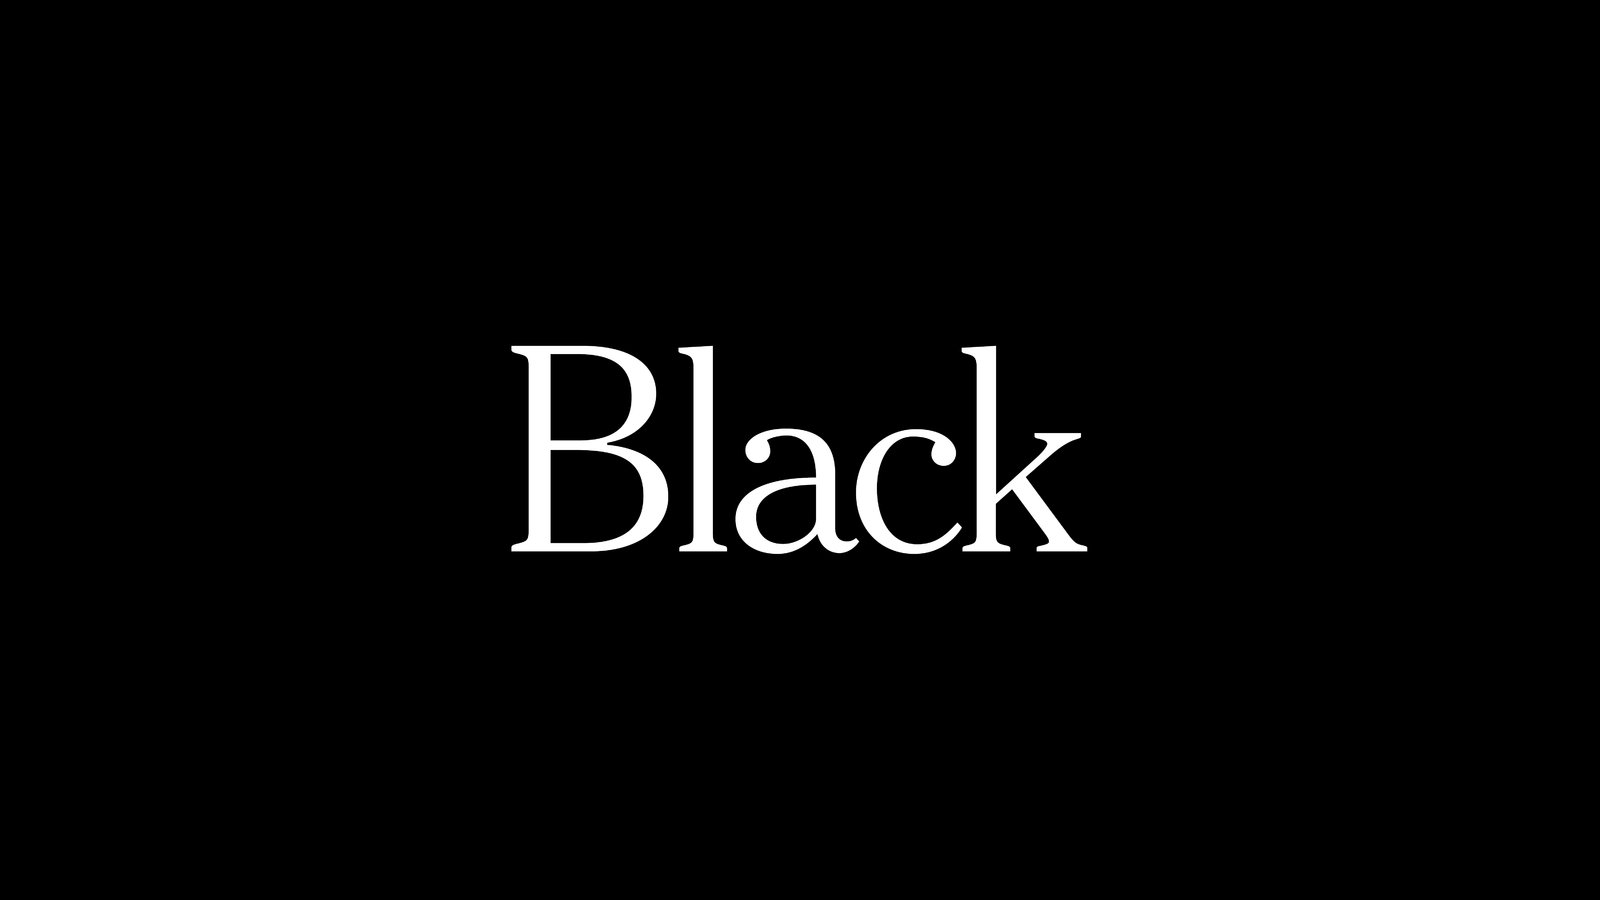 Black Là Màu Gì? Mẫu Câu Ví Dụ Và Thành Ngữ Đi Với Black